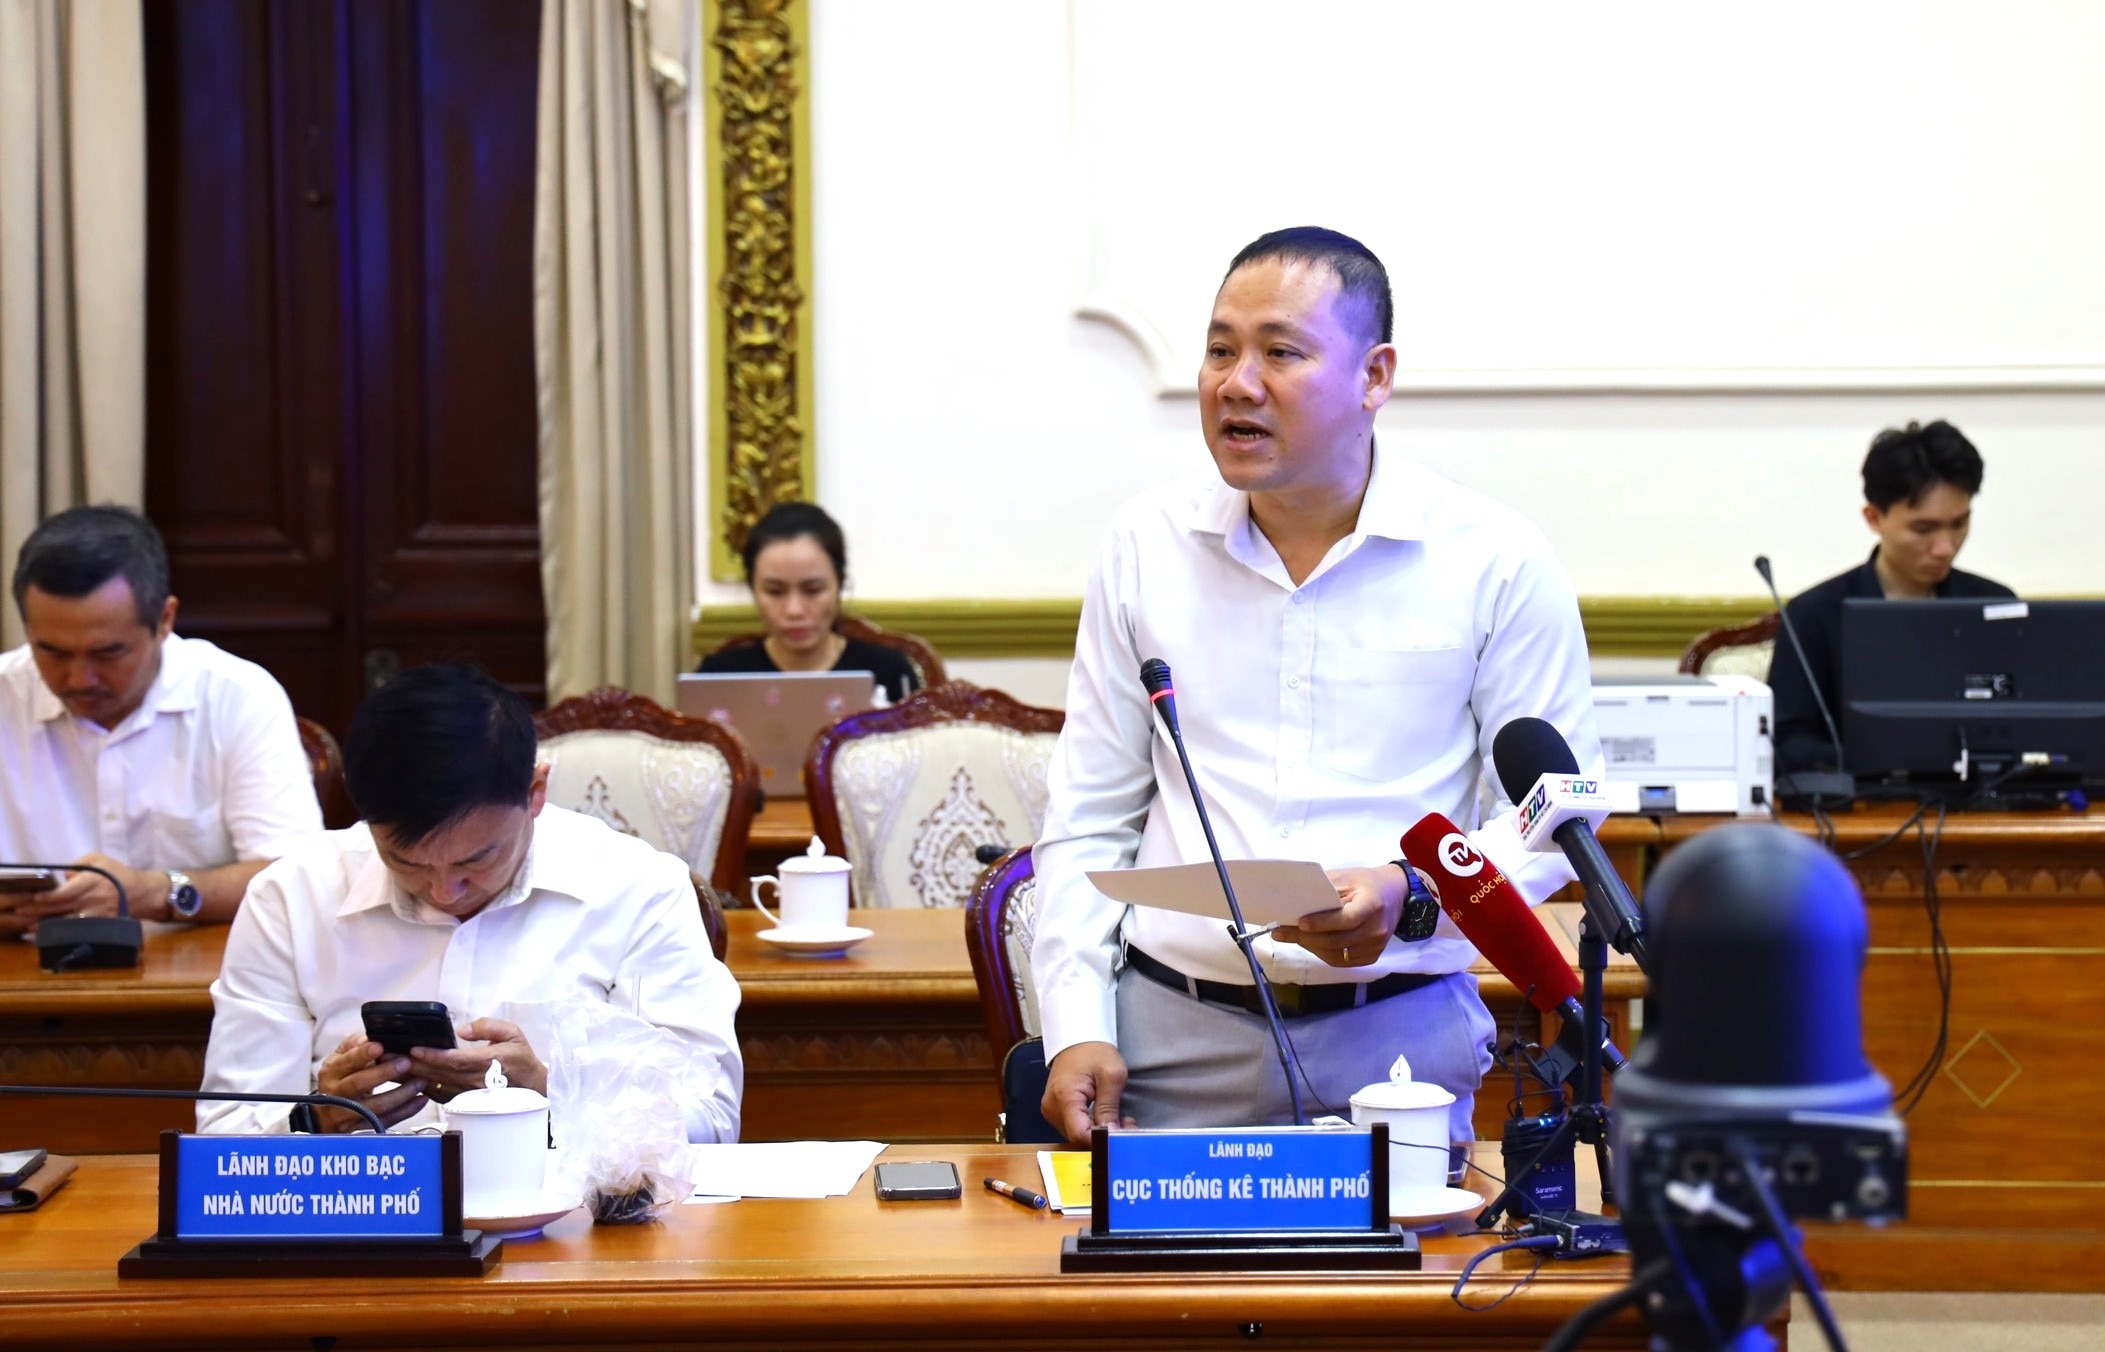 Ông Nguyễn Khắc Hoàng, Cục trưởng Cục Thống kê TP.HCM nhận định kinh tế 4 tháng đầu năm chưa có cú hích đủ mạnh